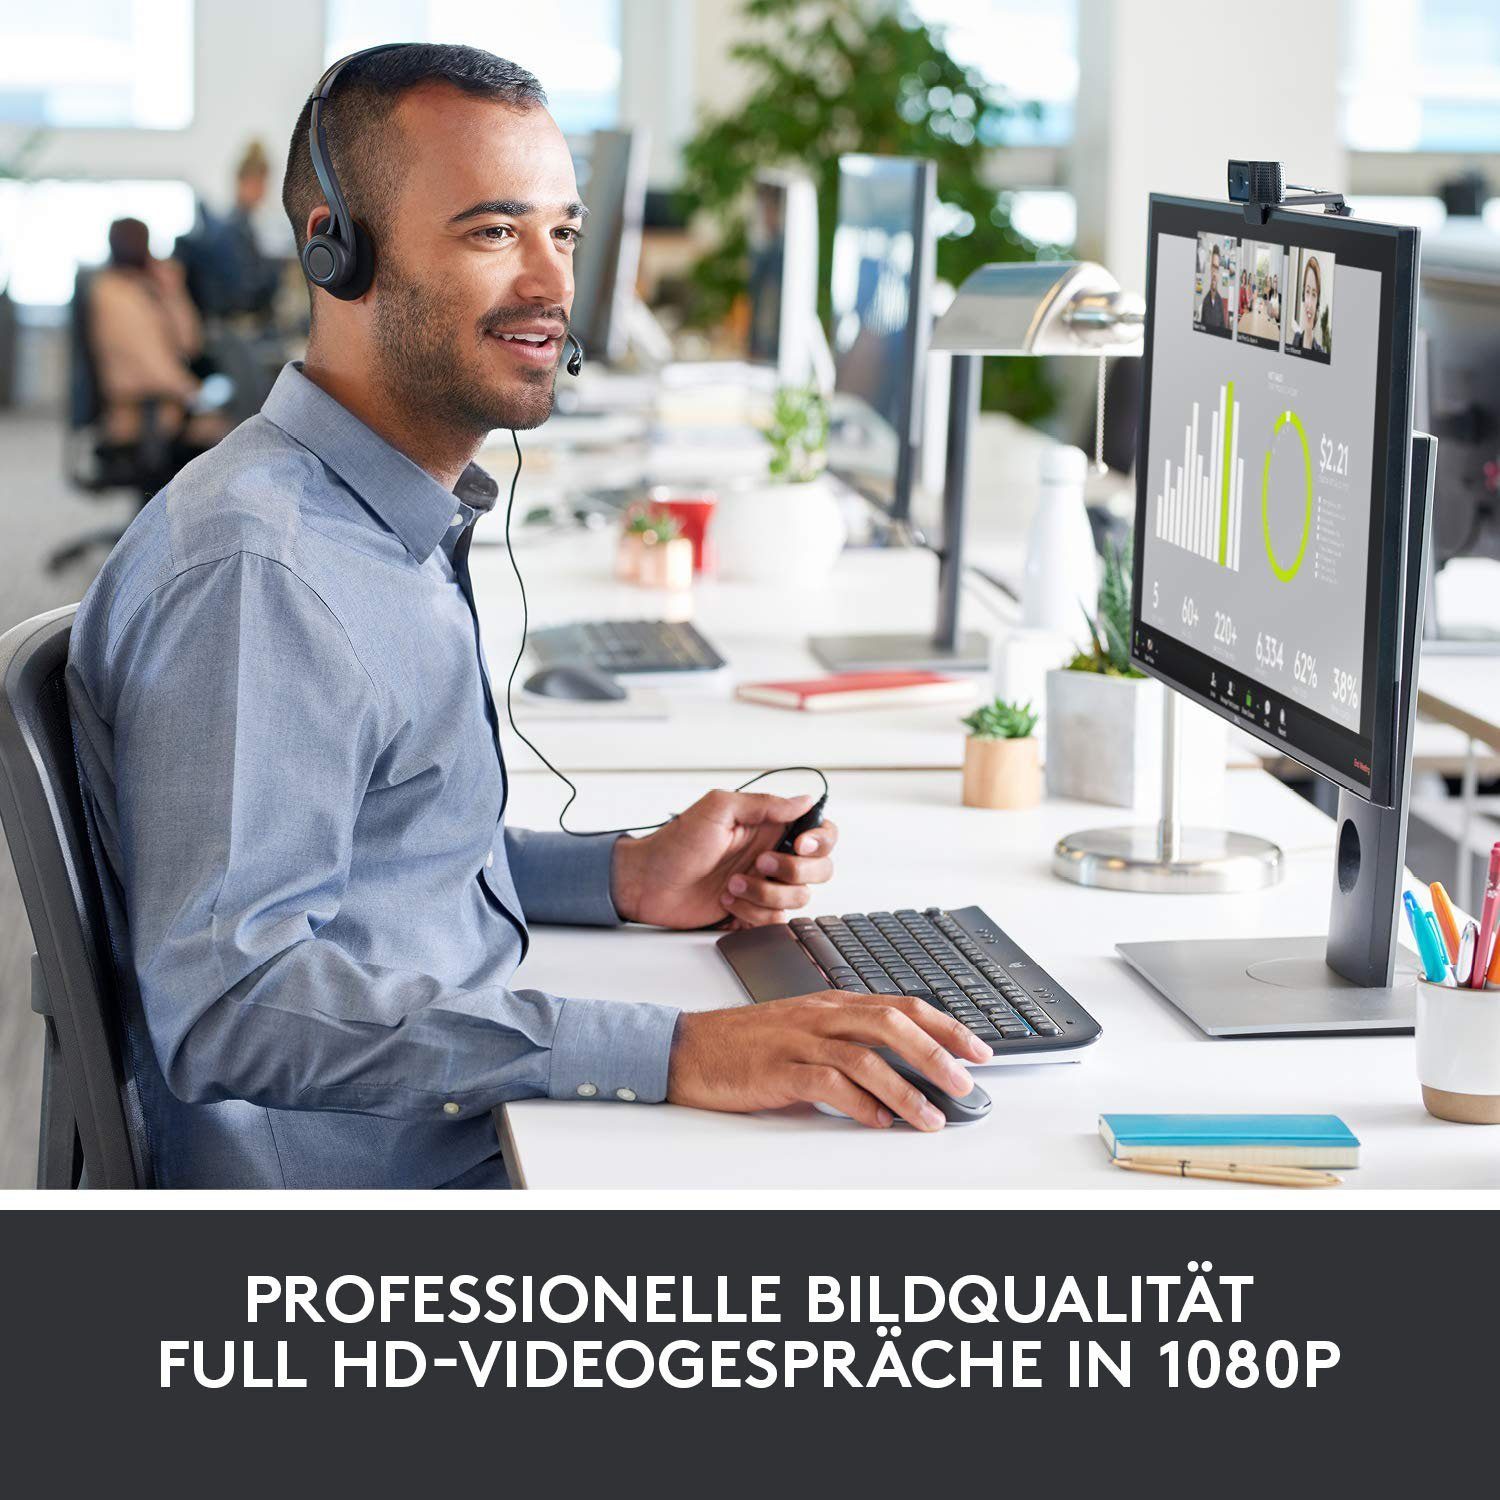 HD HD) Webcam (Full PRO C920 Logitech